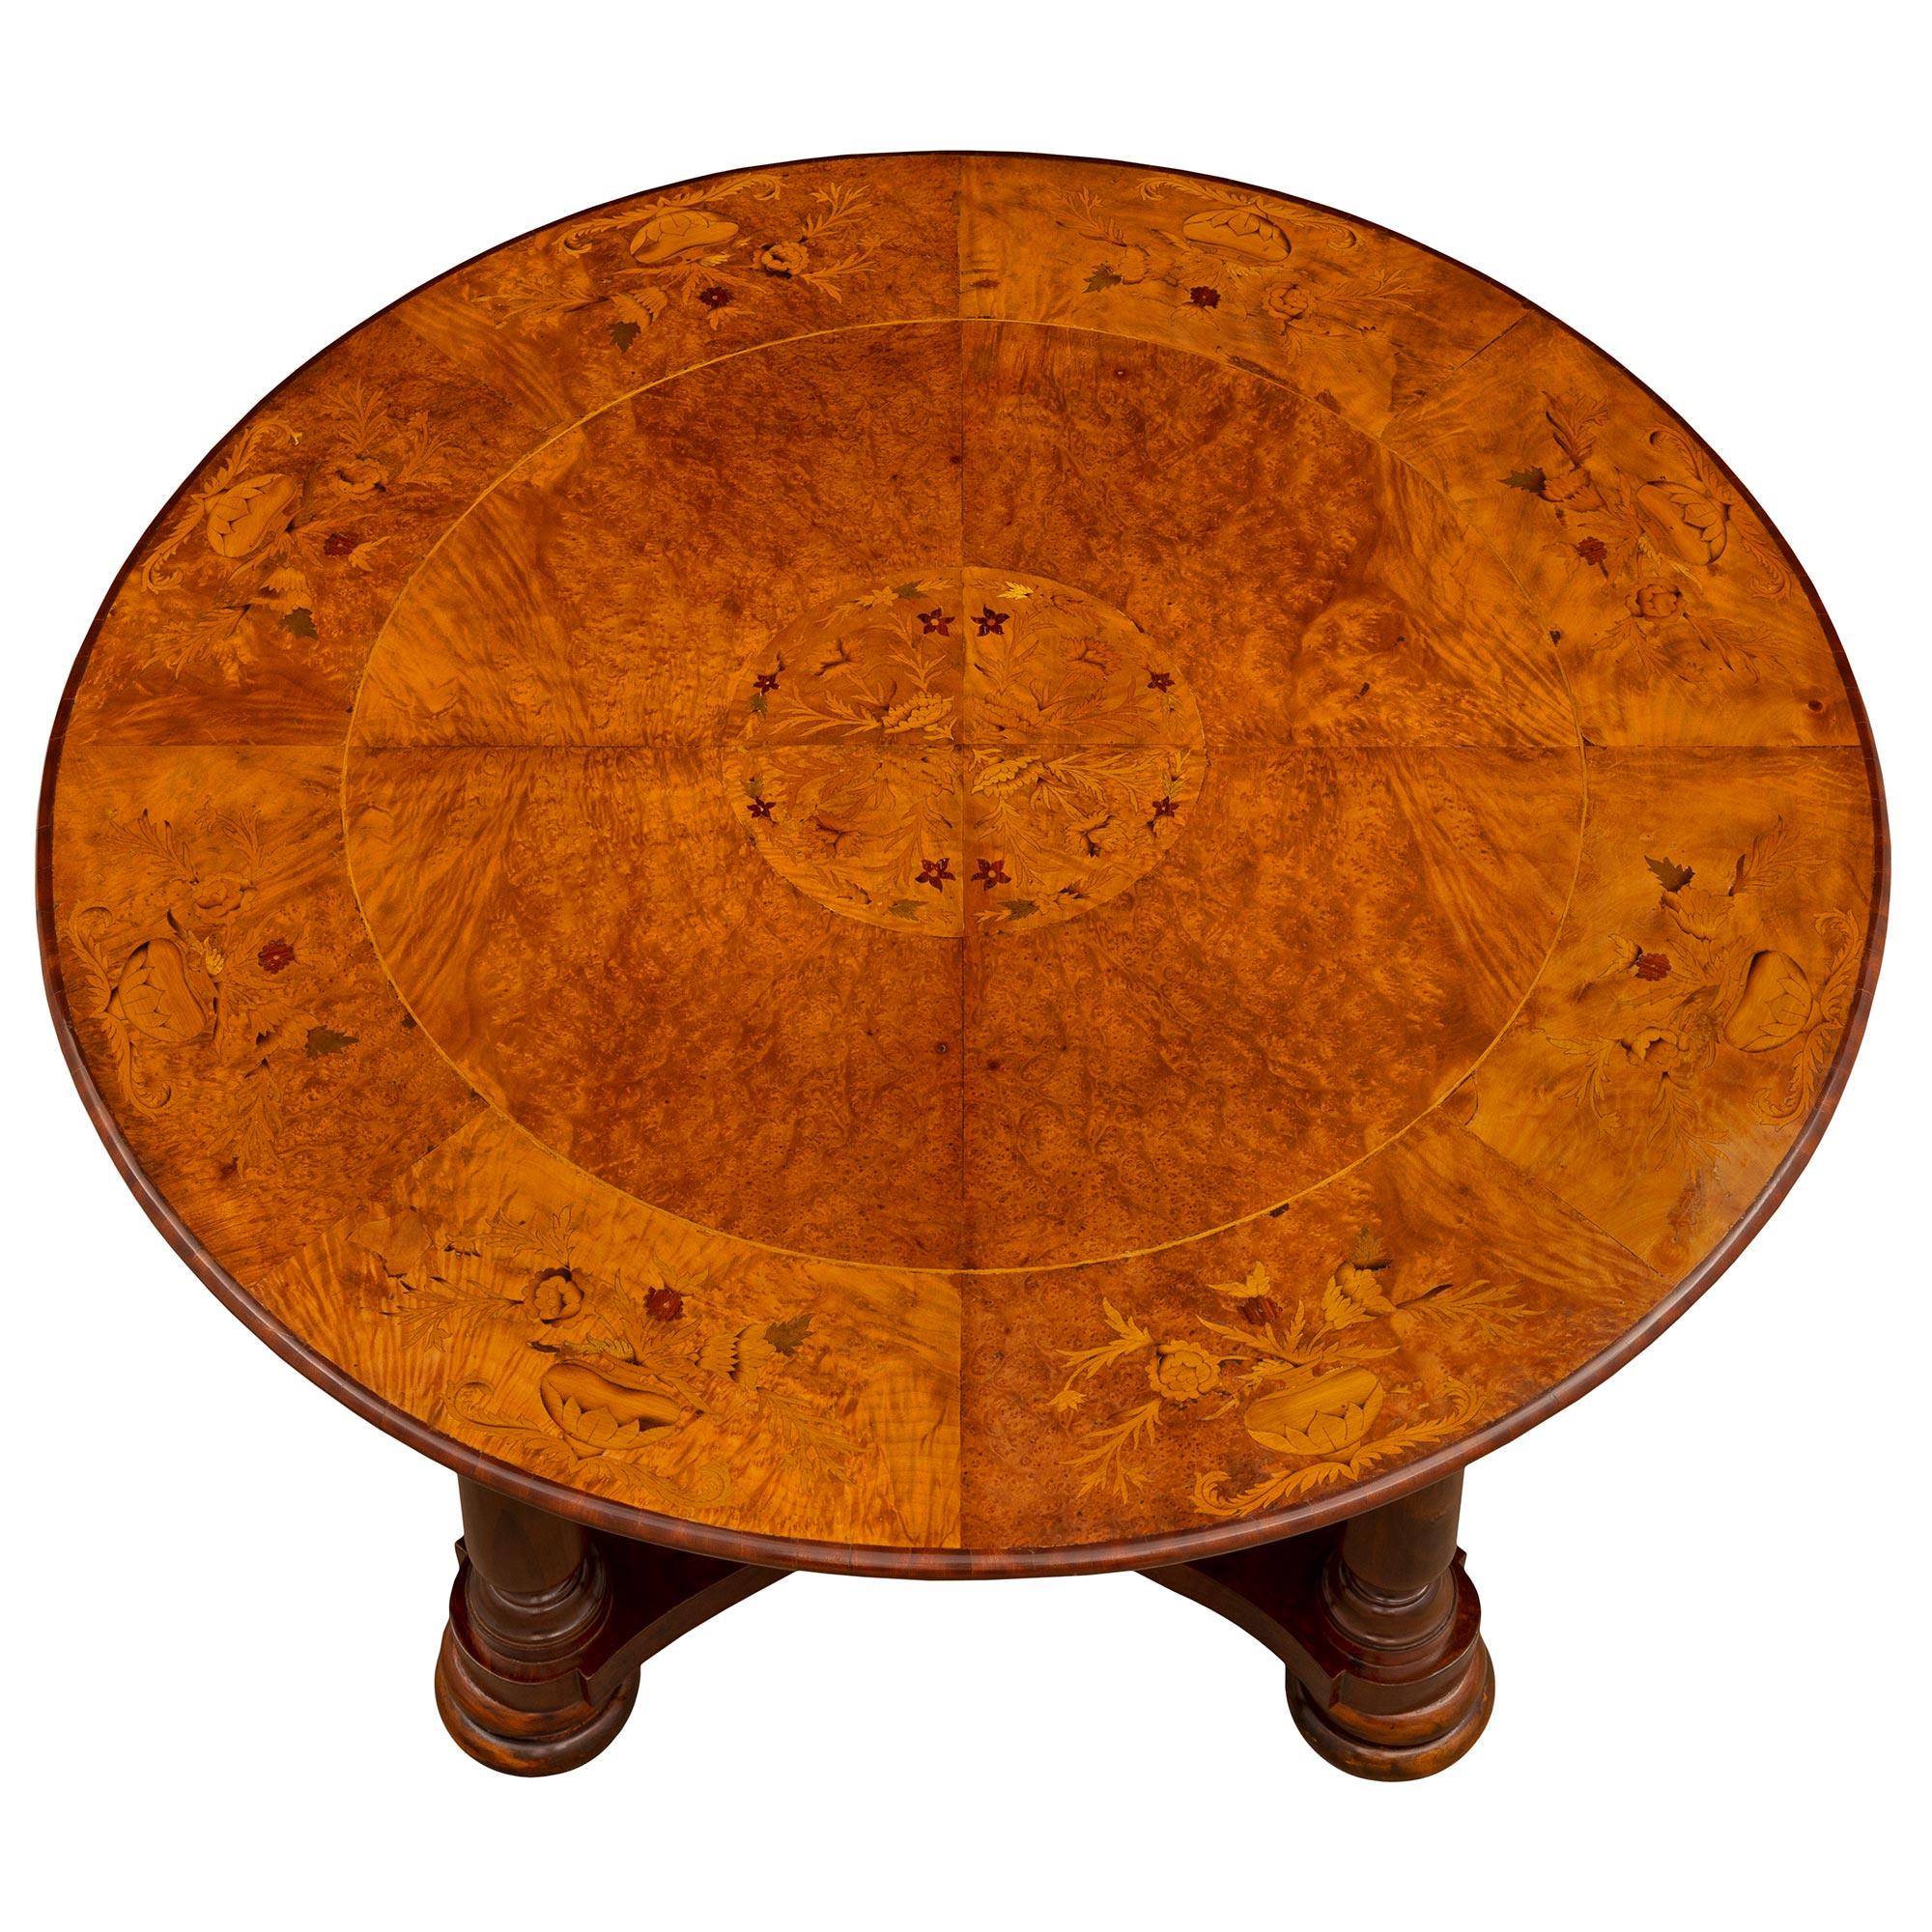 Une belle table de centre italienne du 19ème siècle en noyer, noyer ronce, orme ronce et bois exotique. La table circulaire est surélevée par des pieds en forme de chignon doublement tachetés très décoratifs, sous des pieds circulaires tournés et